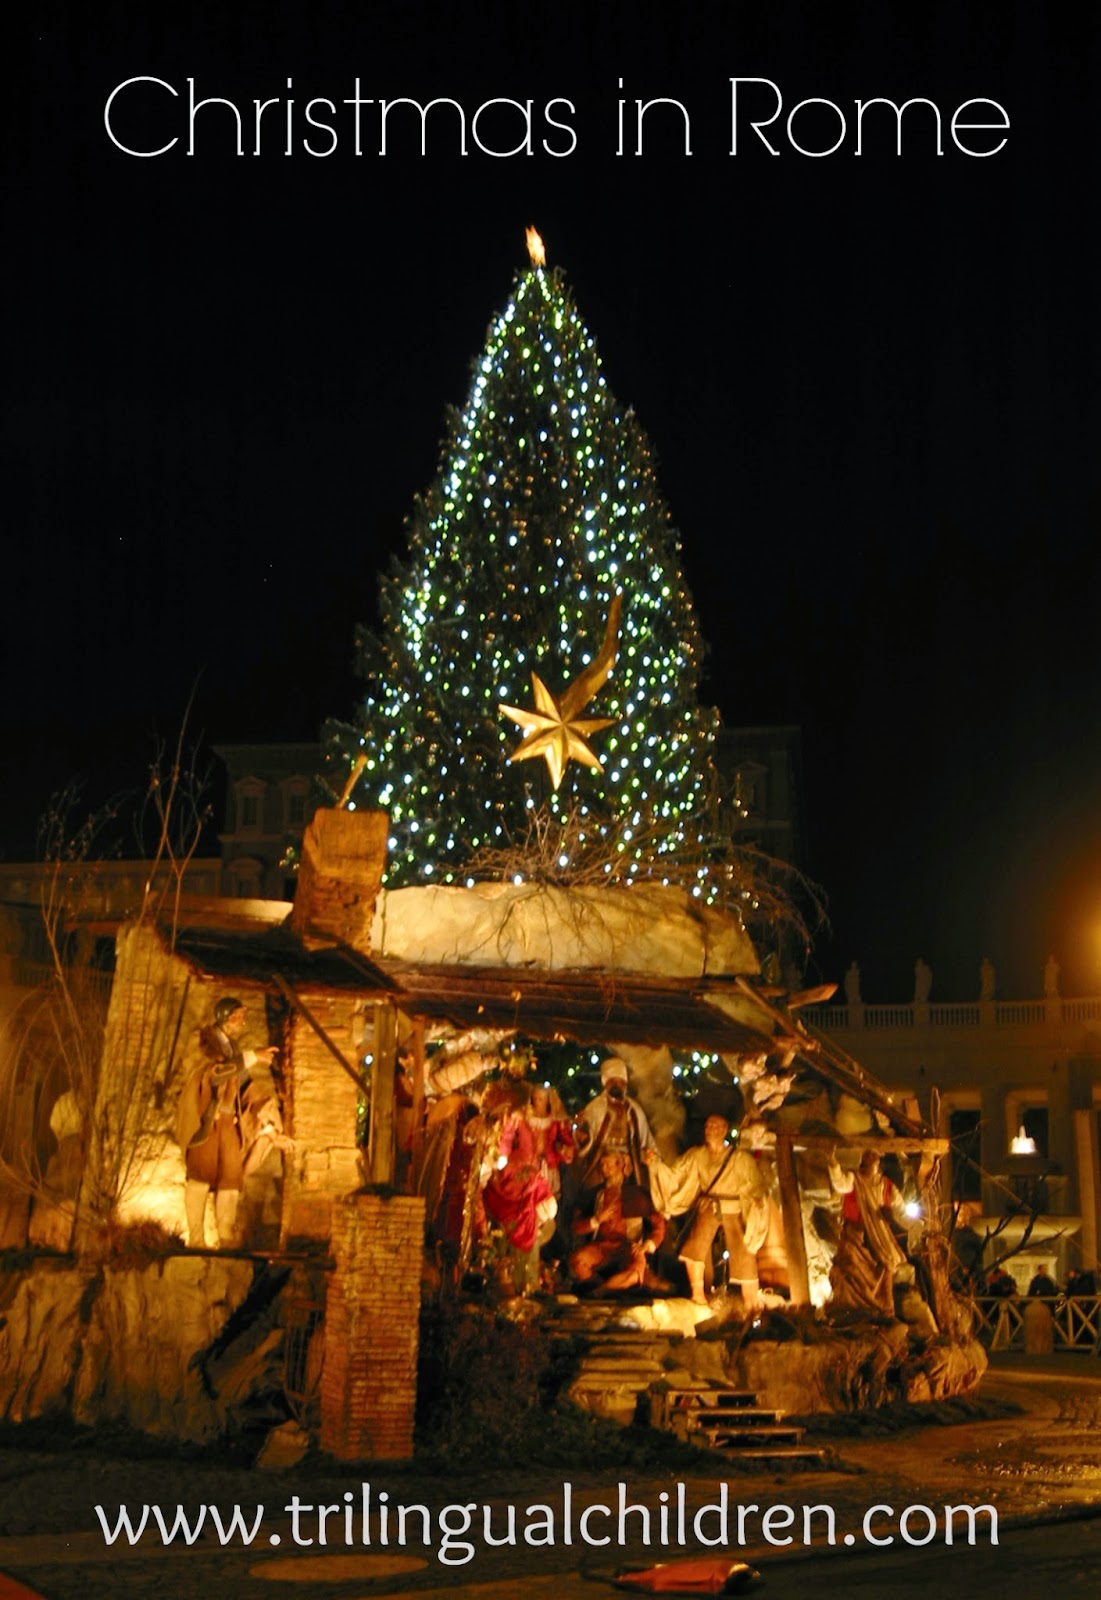 Presepio - nativity scene Rome Italy